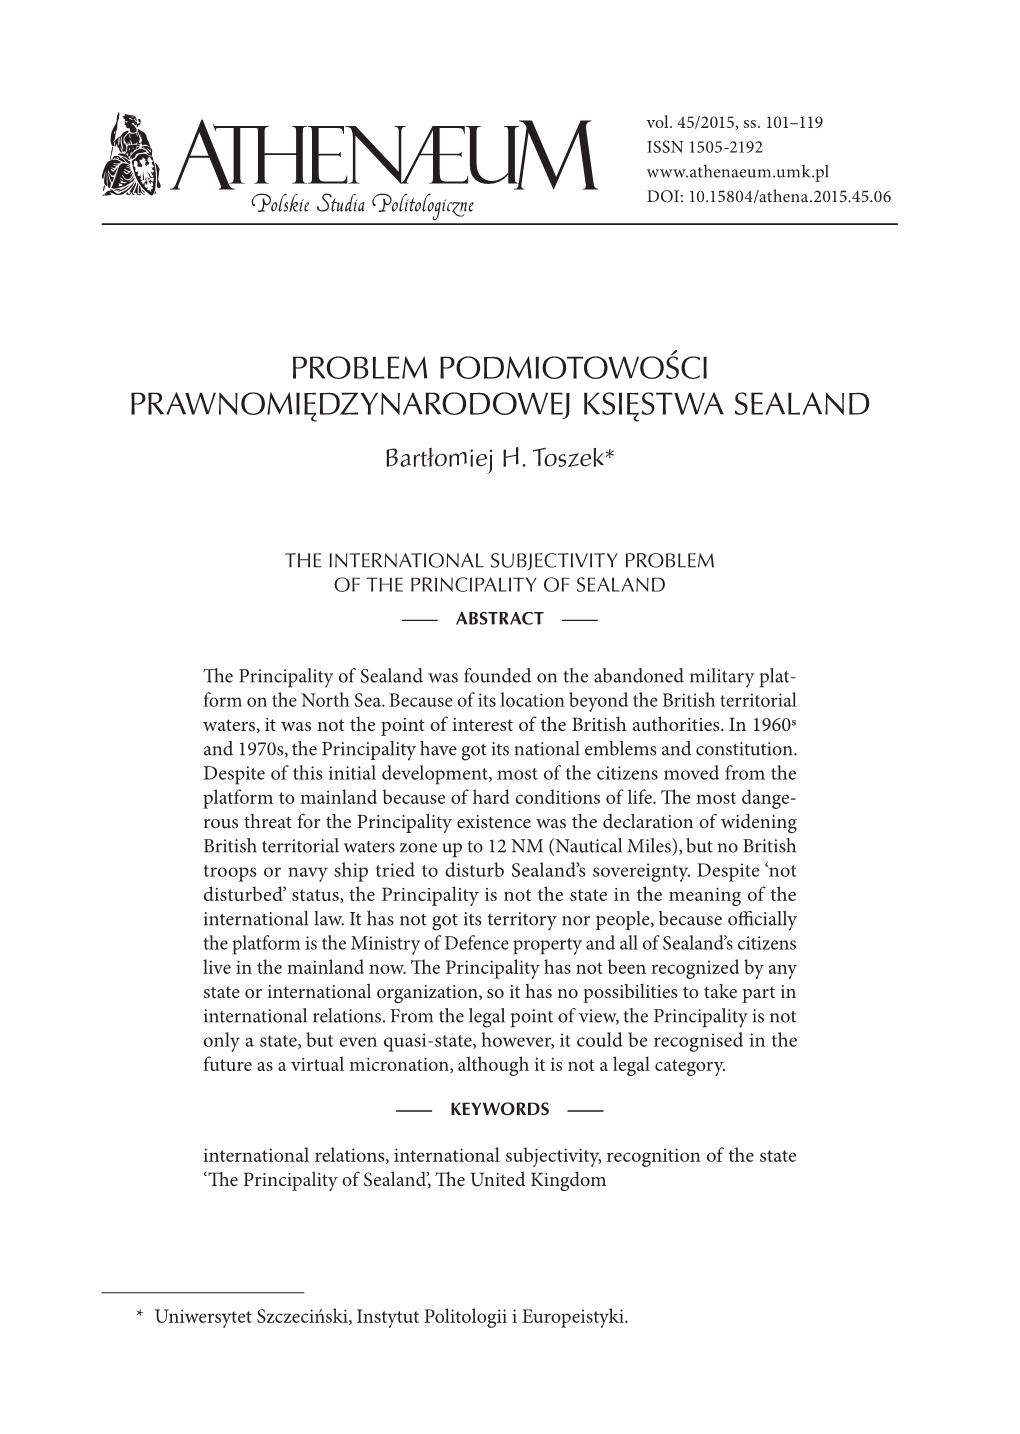 Problem Podmiotowości Prawnomiędzynarodowej Księstwa Sealand